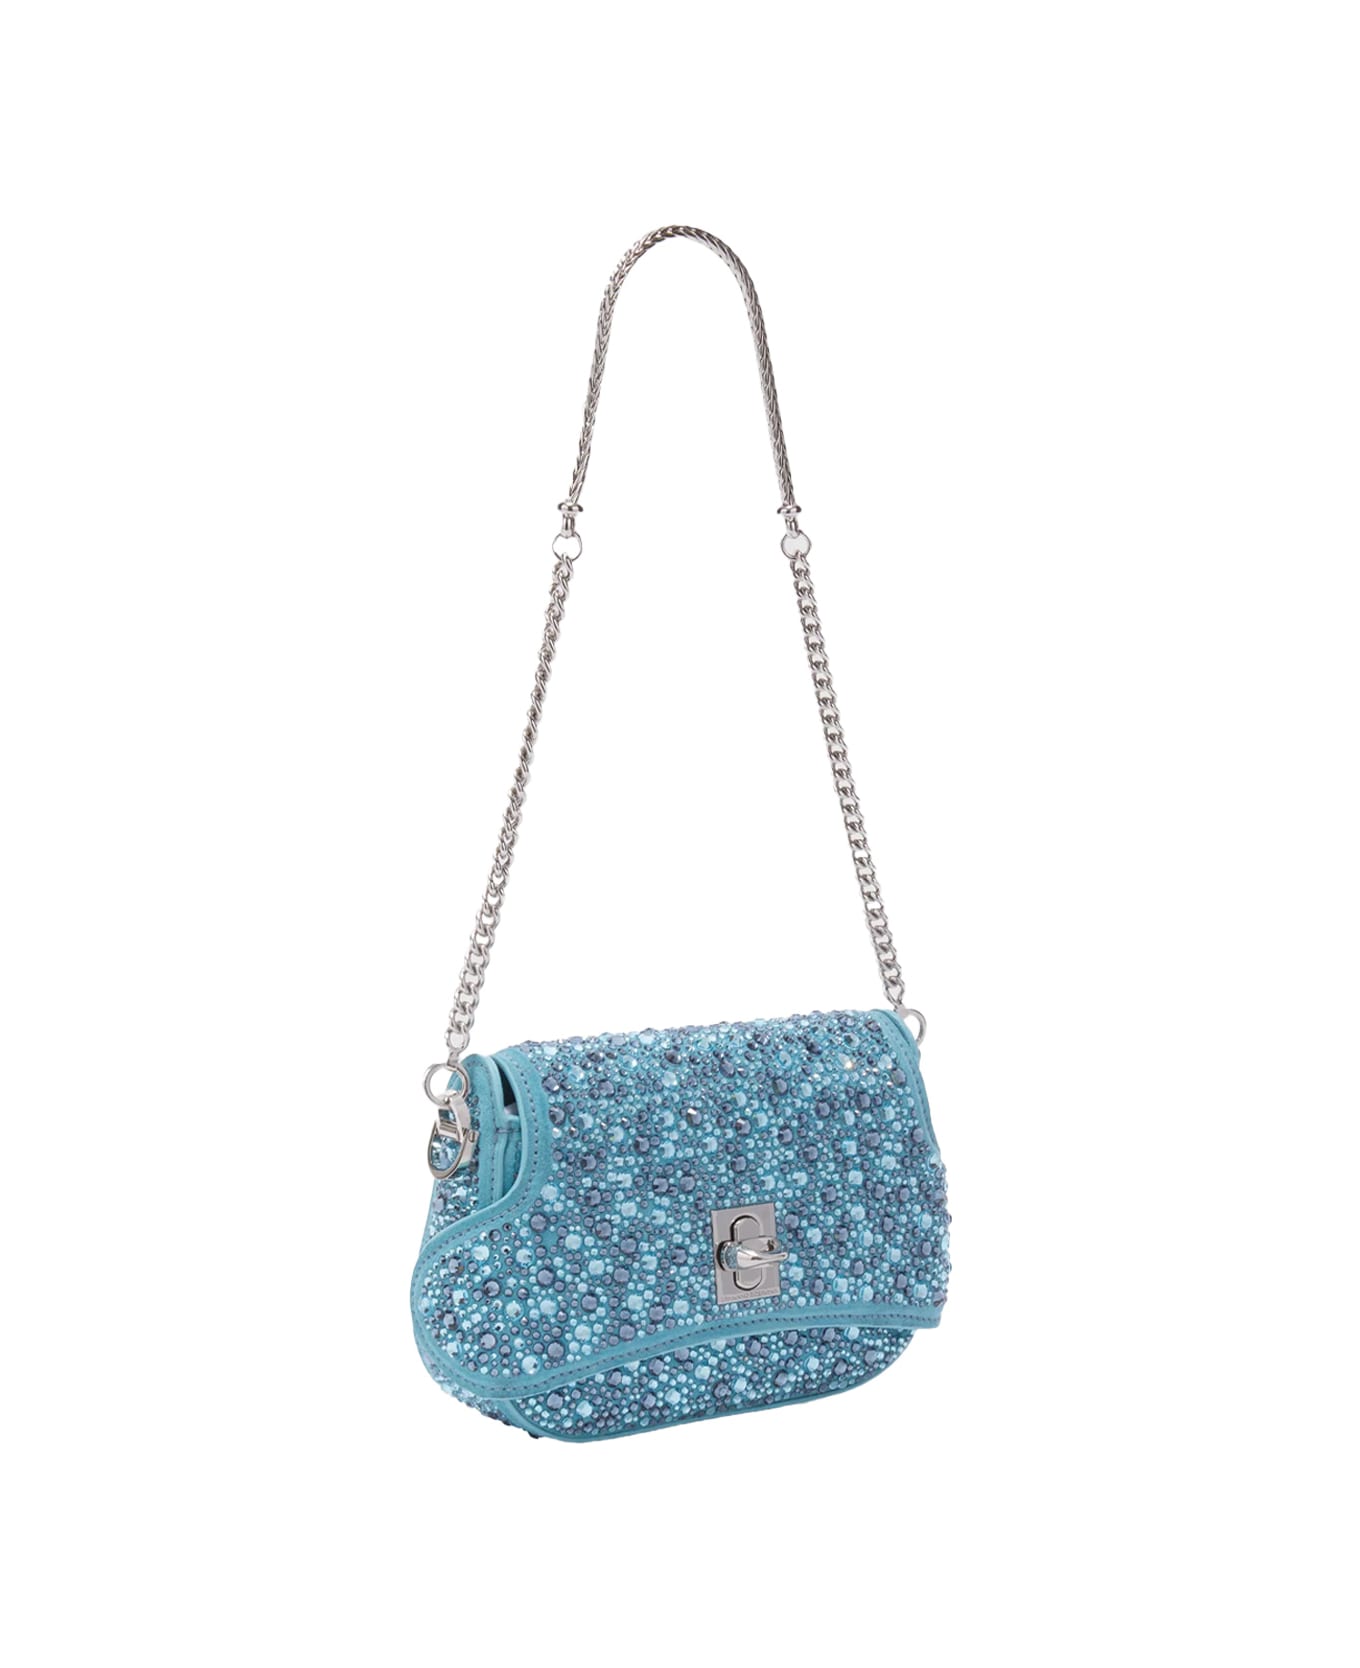 Ermanno Scervino Light Blue Audrey Bag With Crystals - Blue